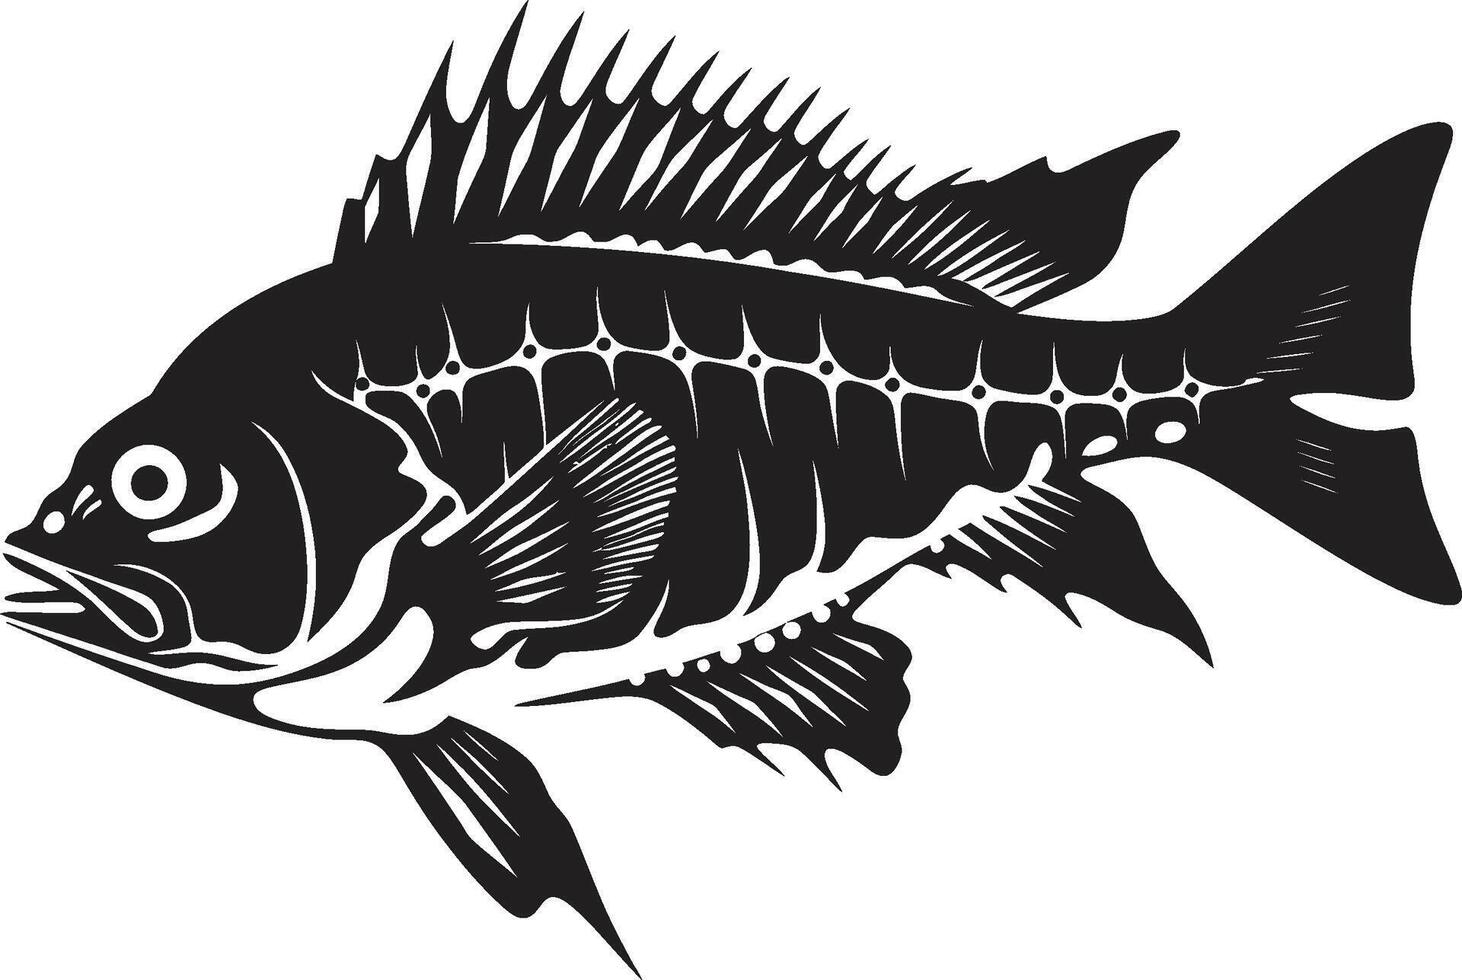 bedrohlich Osteologie ikonisch schwarz Design zum Raubtier Fisch Skelett Logo bedrohlich Mark Kennzeichen elegant schwarz Symbol zum Raubtier Fisch Skelett vektor